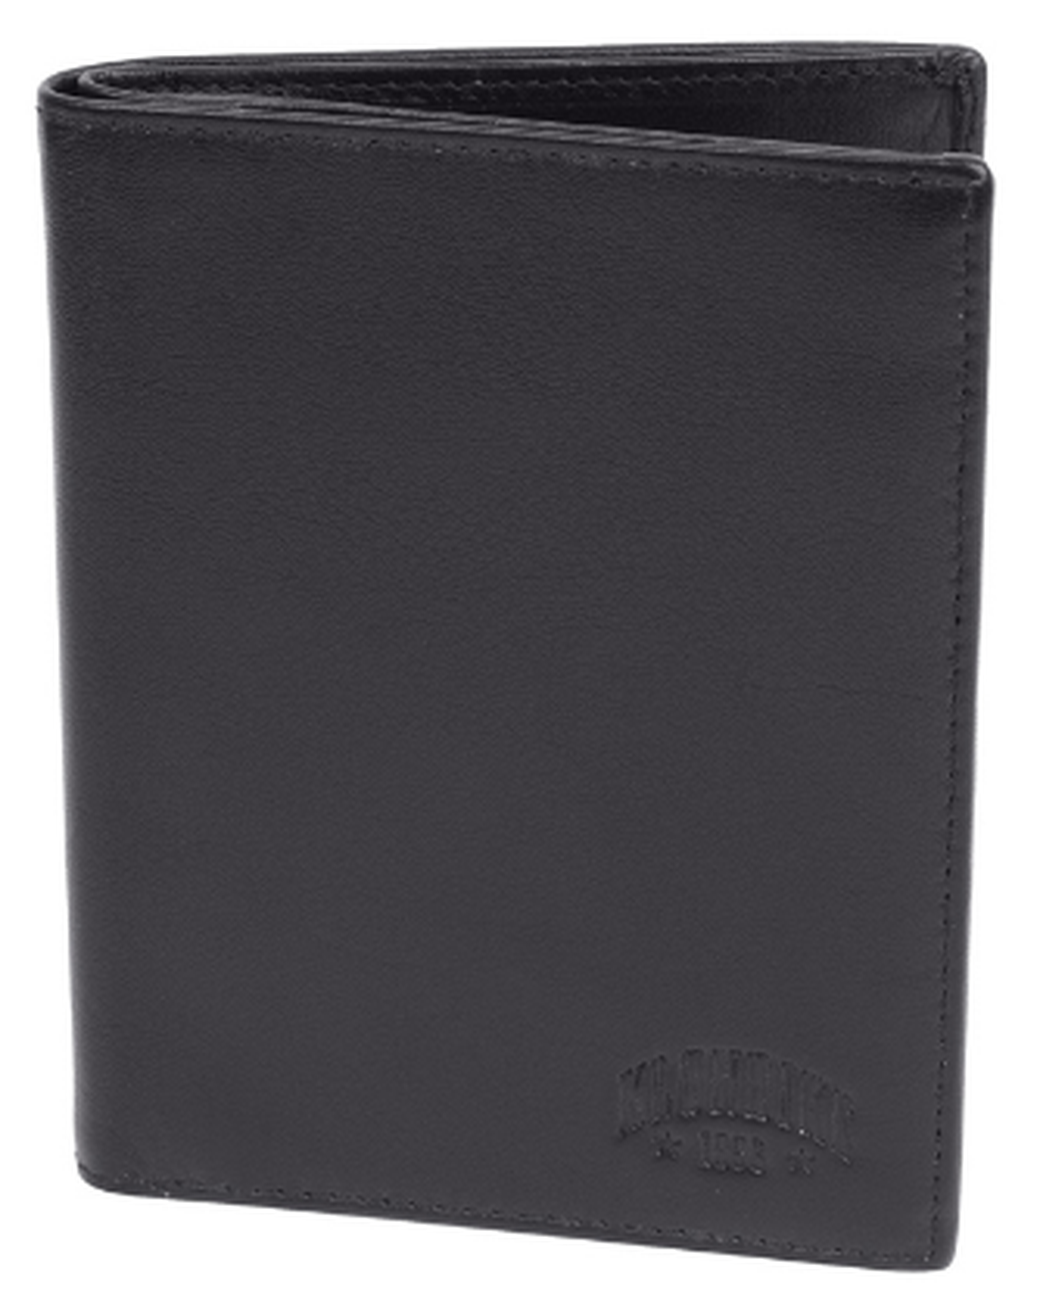 Бумажник Klondike Claim, черный, 10х1х12,5 см фото